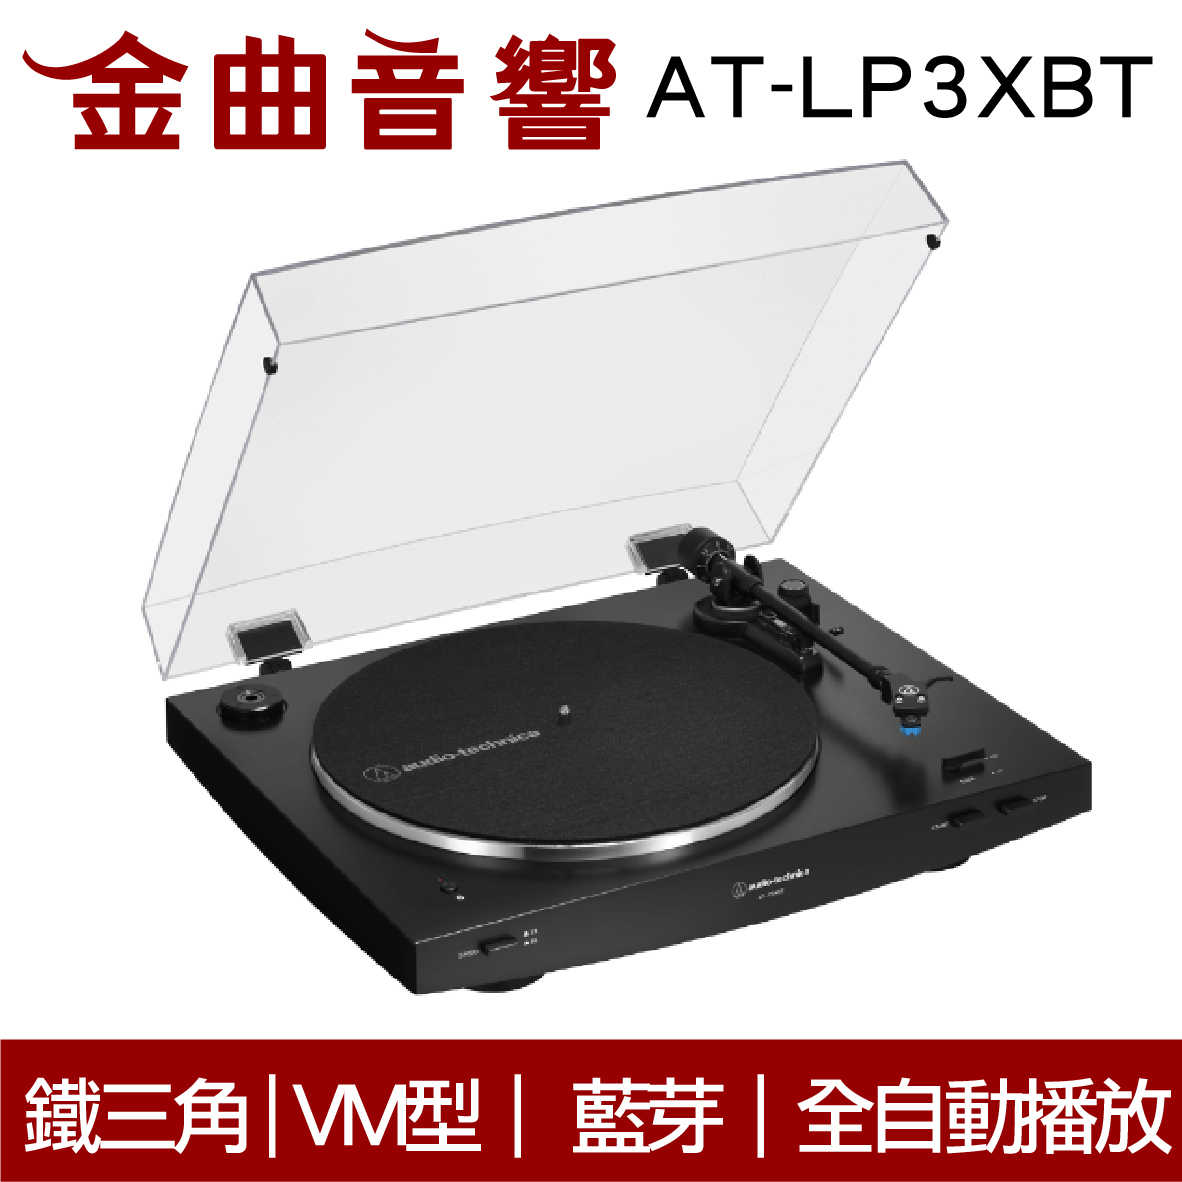 鐵三角 AT-LP3XBT 黑色 全自動 無線 藍牙 黑膠唱盤 | 金曲音響